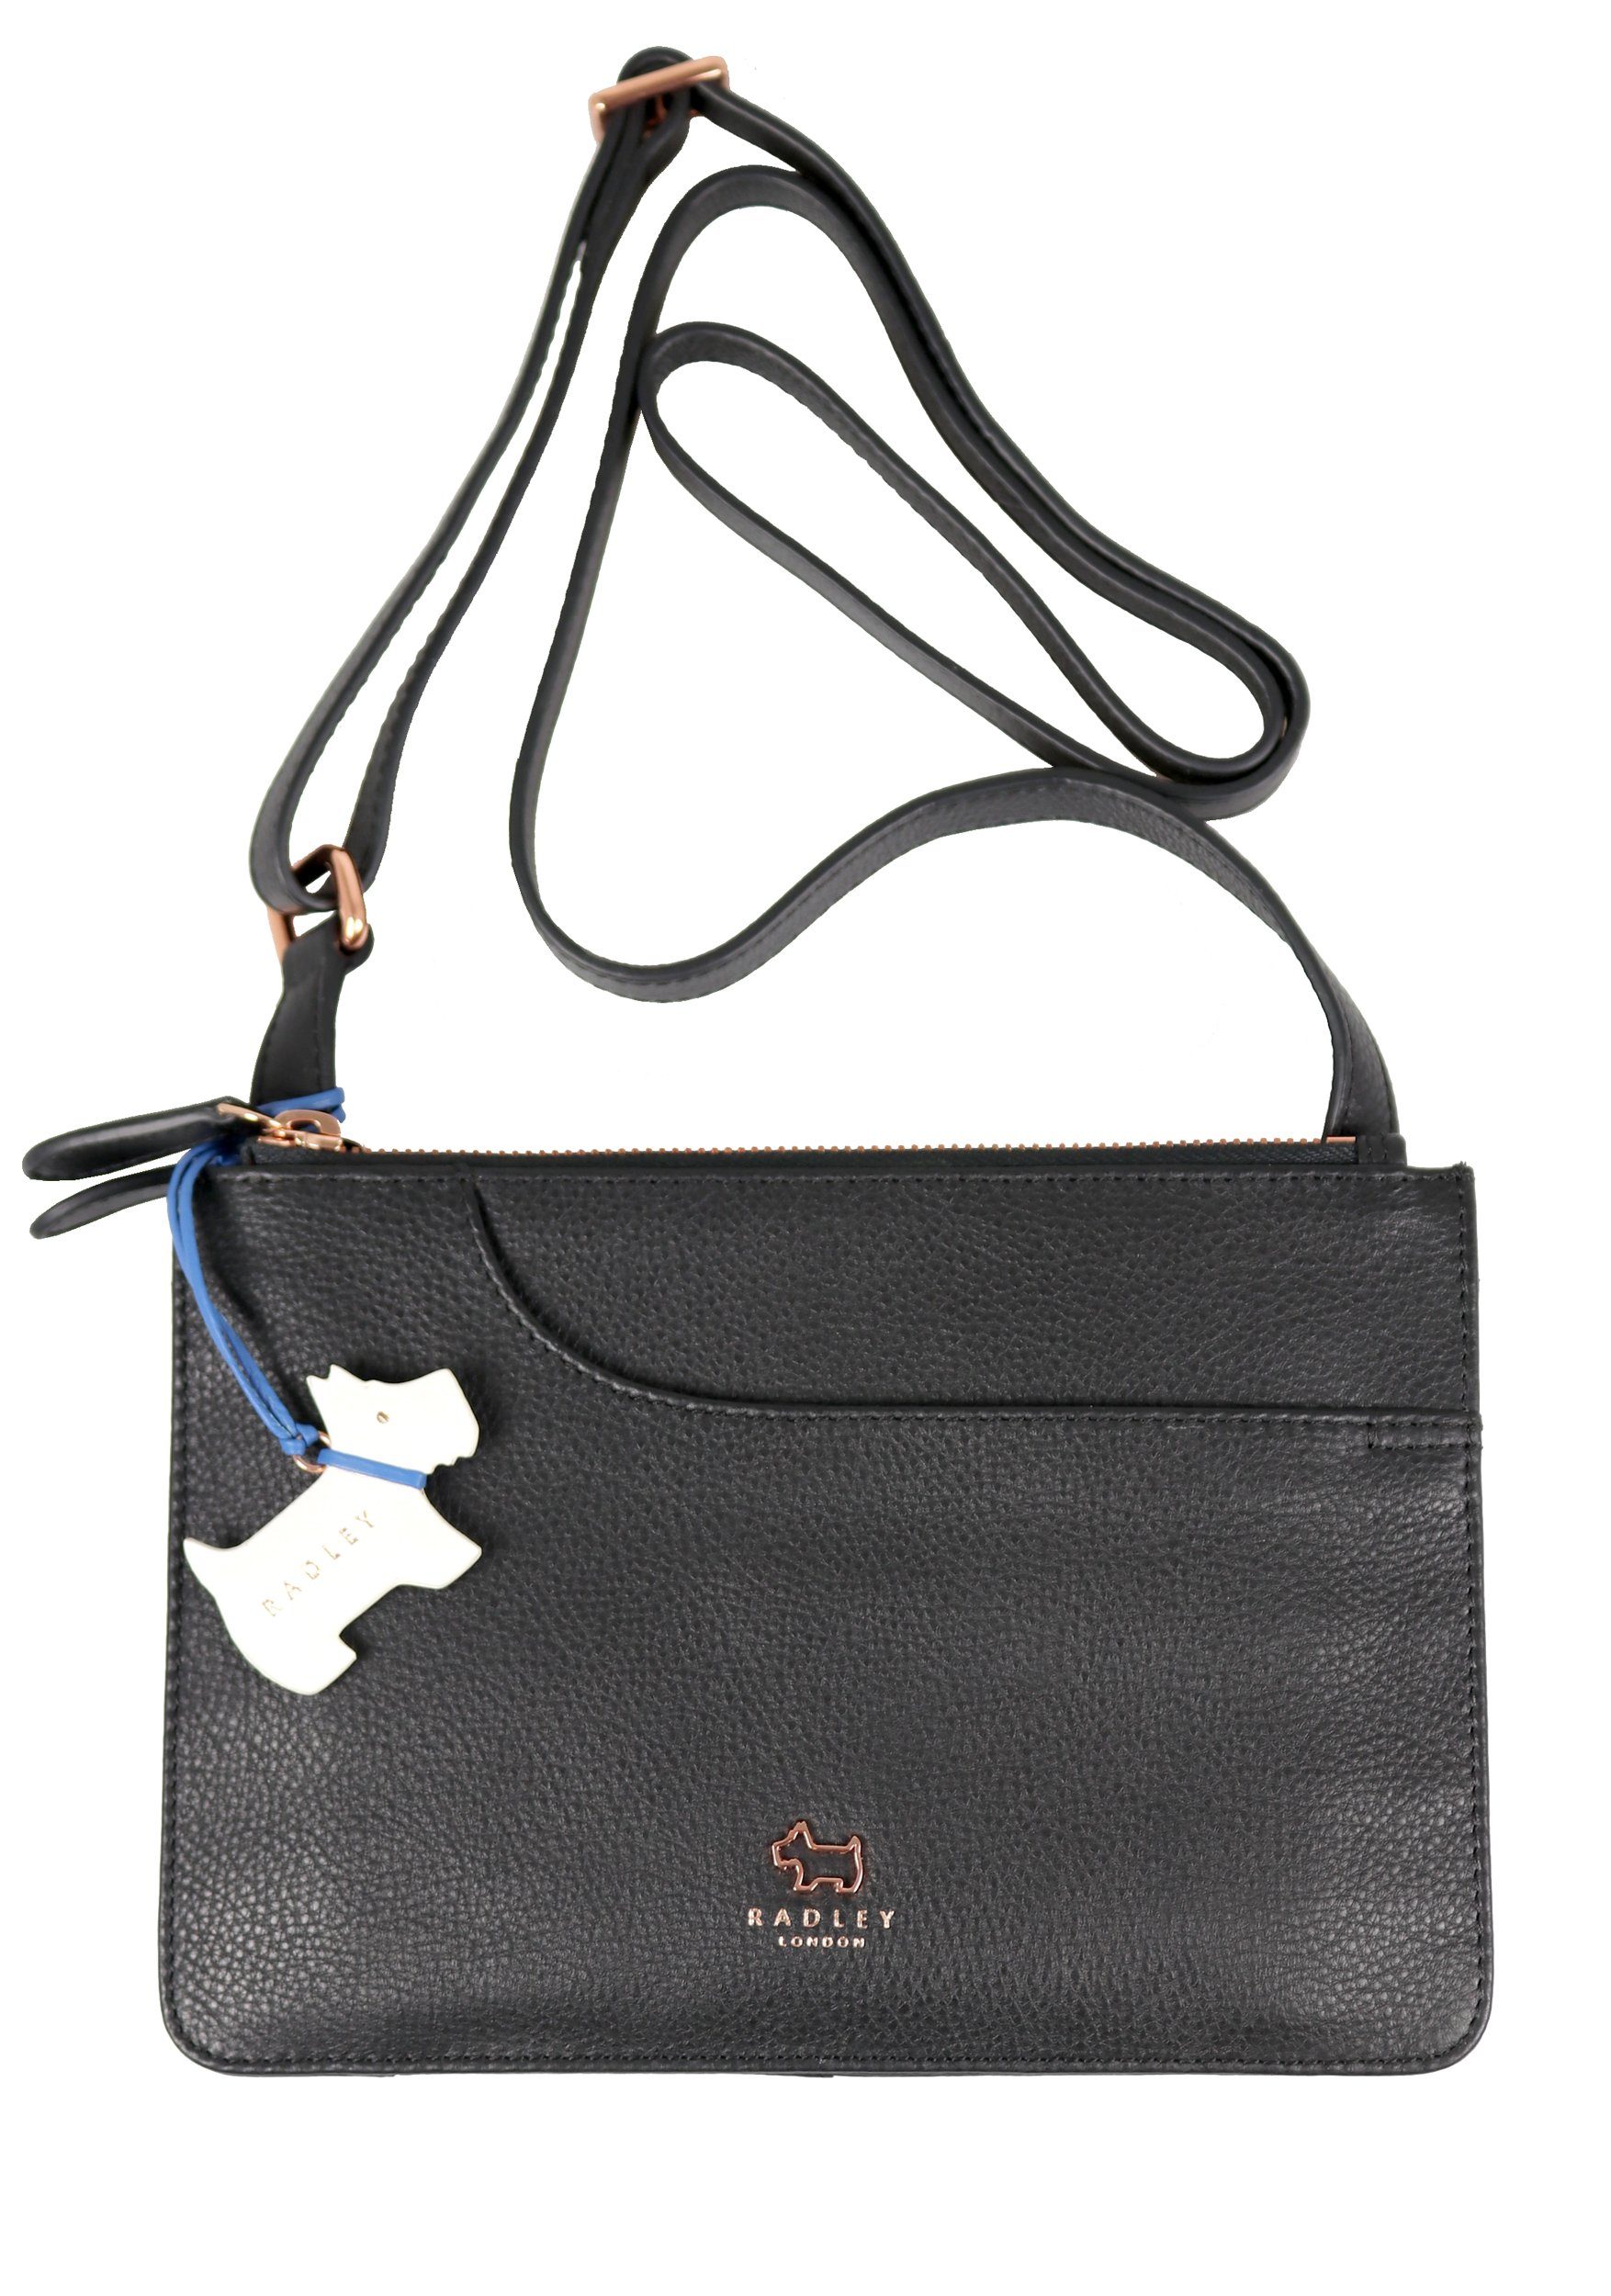 Radley Schultertasche »Damen Tasche Crossover "Pocket" 17069 black, Leder  schwarz, klein, Metalldetails rosegold« online kaufen | OTTO